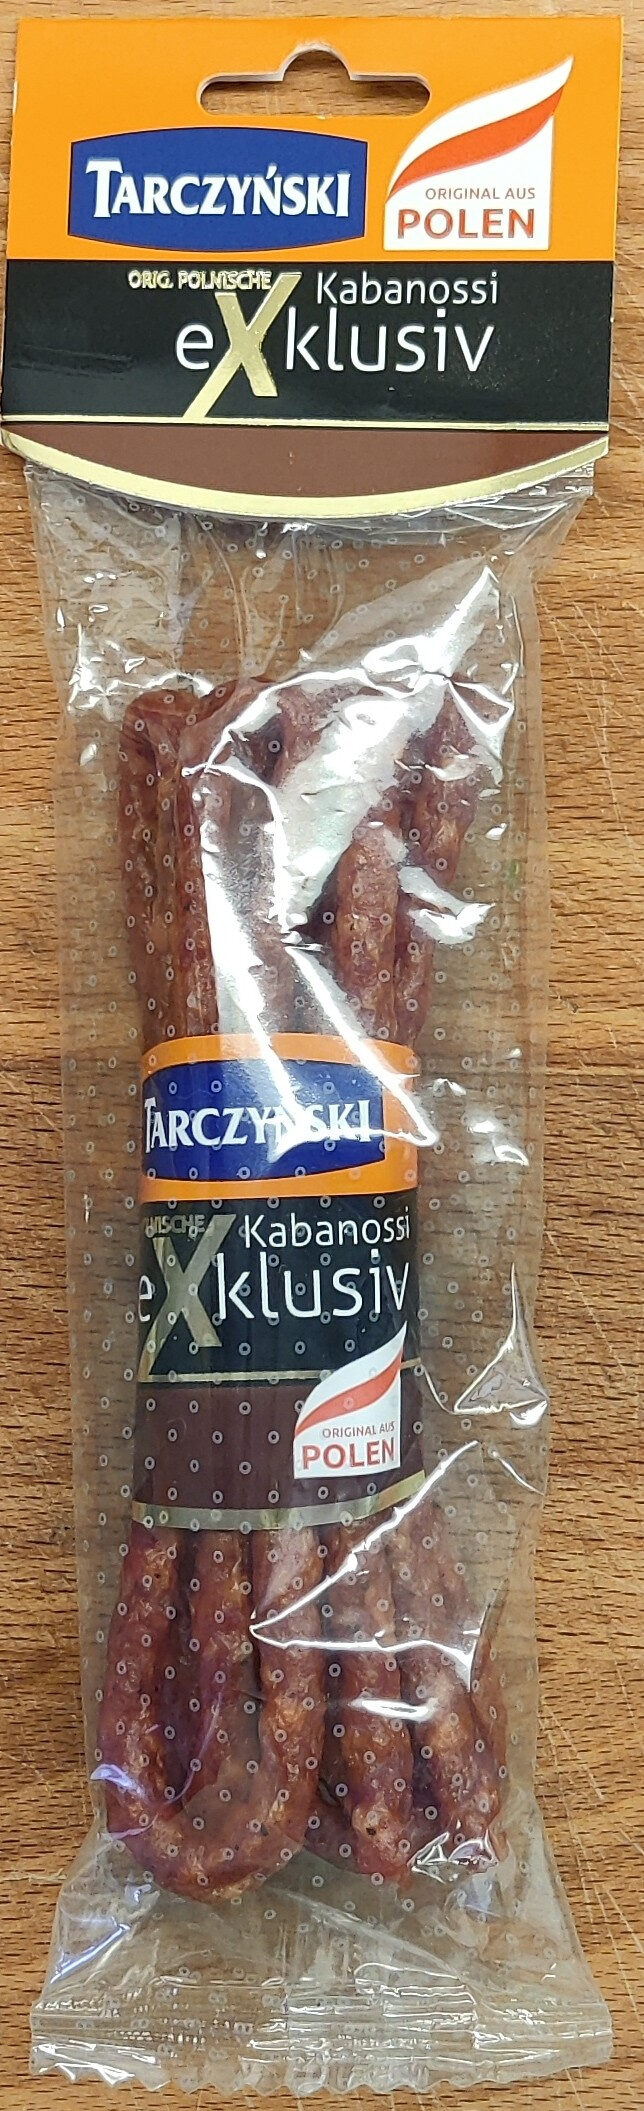 orig. Polnische Kabanossi - Produkt